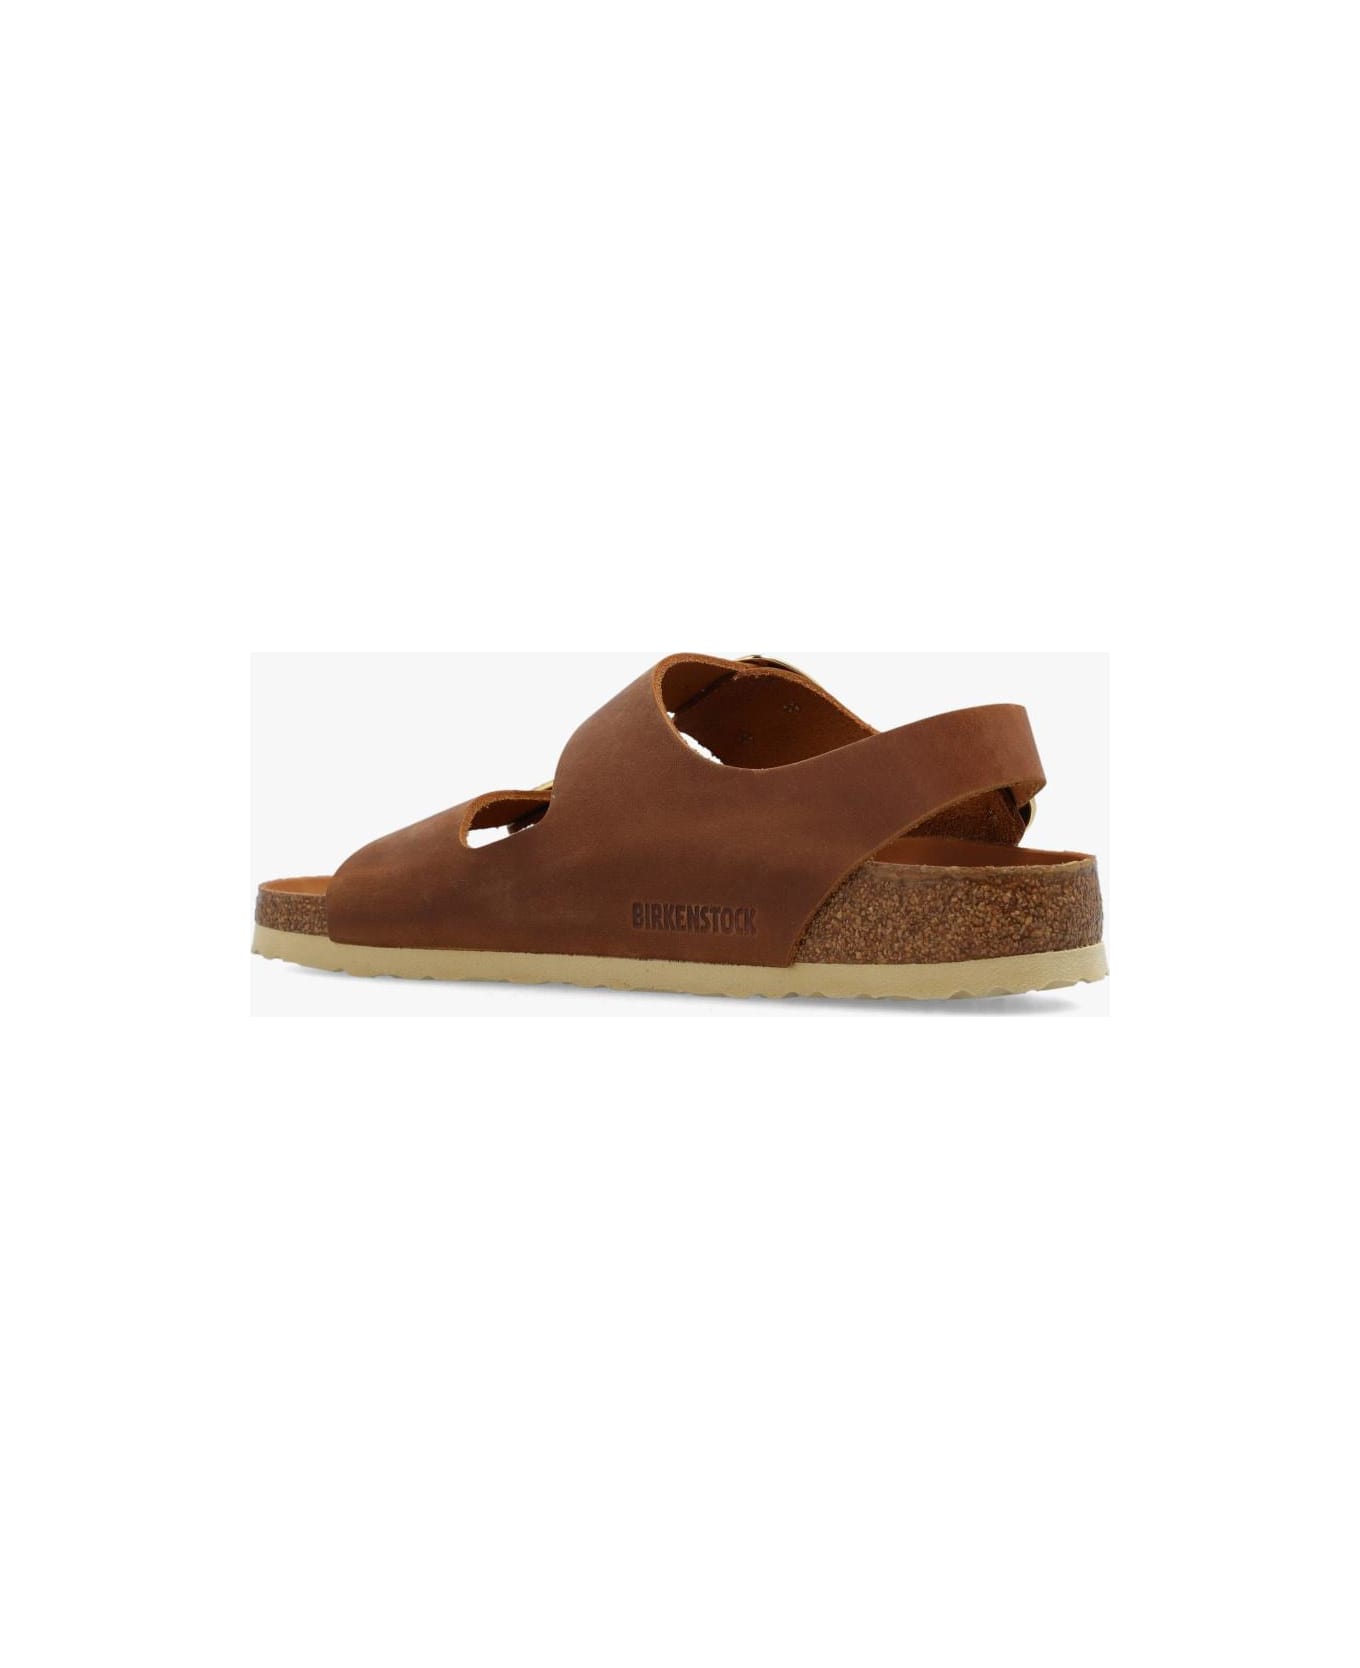 Birkenstock 'milano Big Buckle' Sandals - Leather Brown